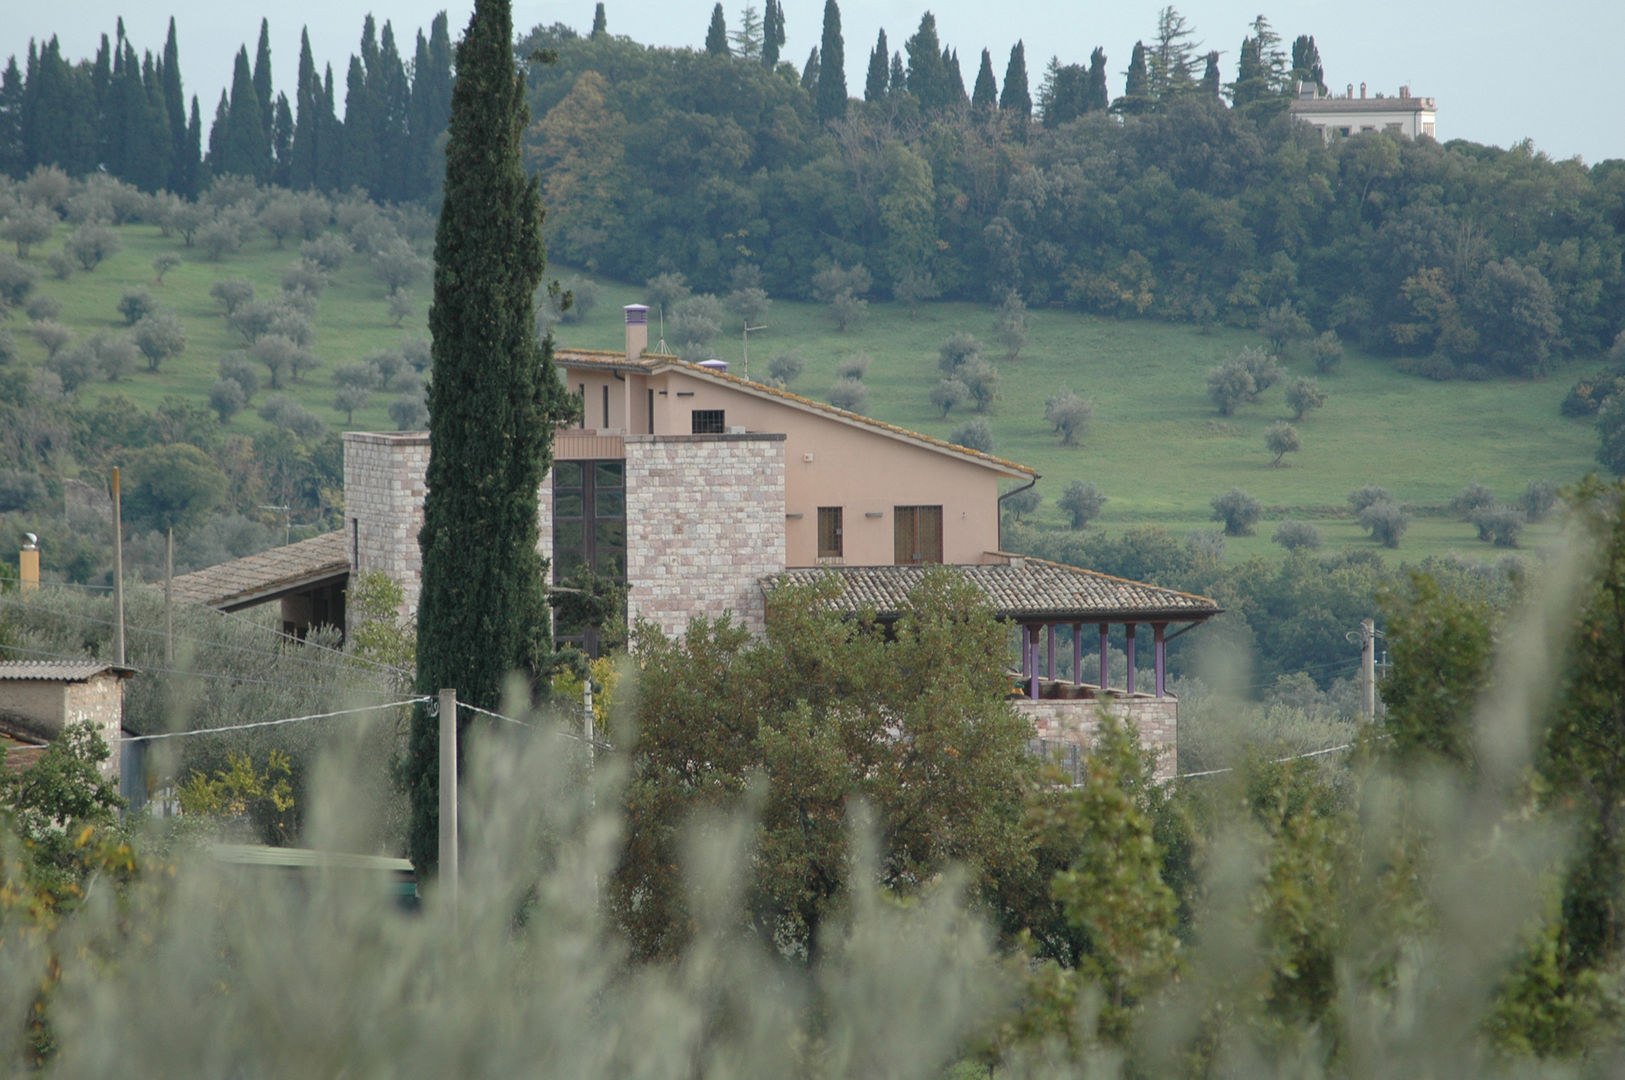 Villa in Campagna ad Assisi, Studio di Bioarchitettura Brozzetti Adriano Studio di Bioarchitettura Brozzetti Adriano カントリーな 家